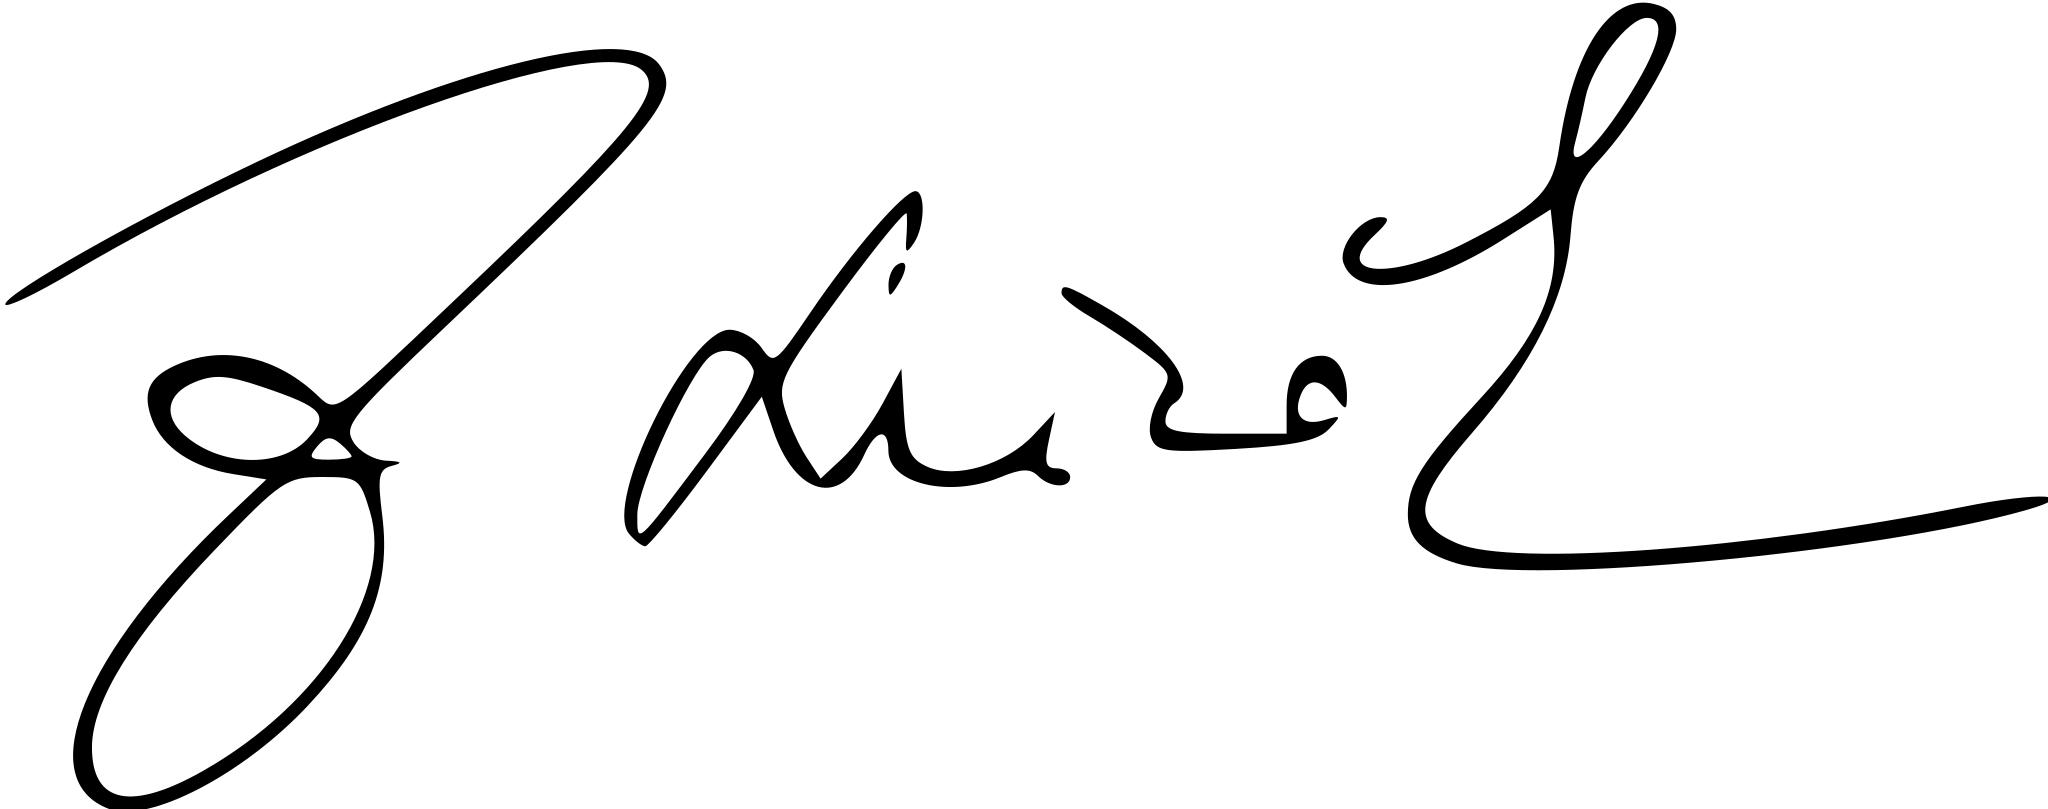 Германская подпись